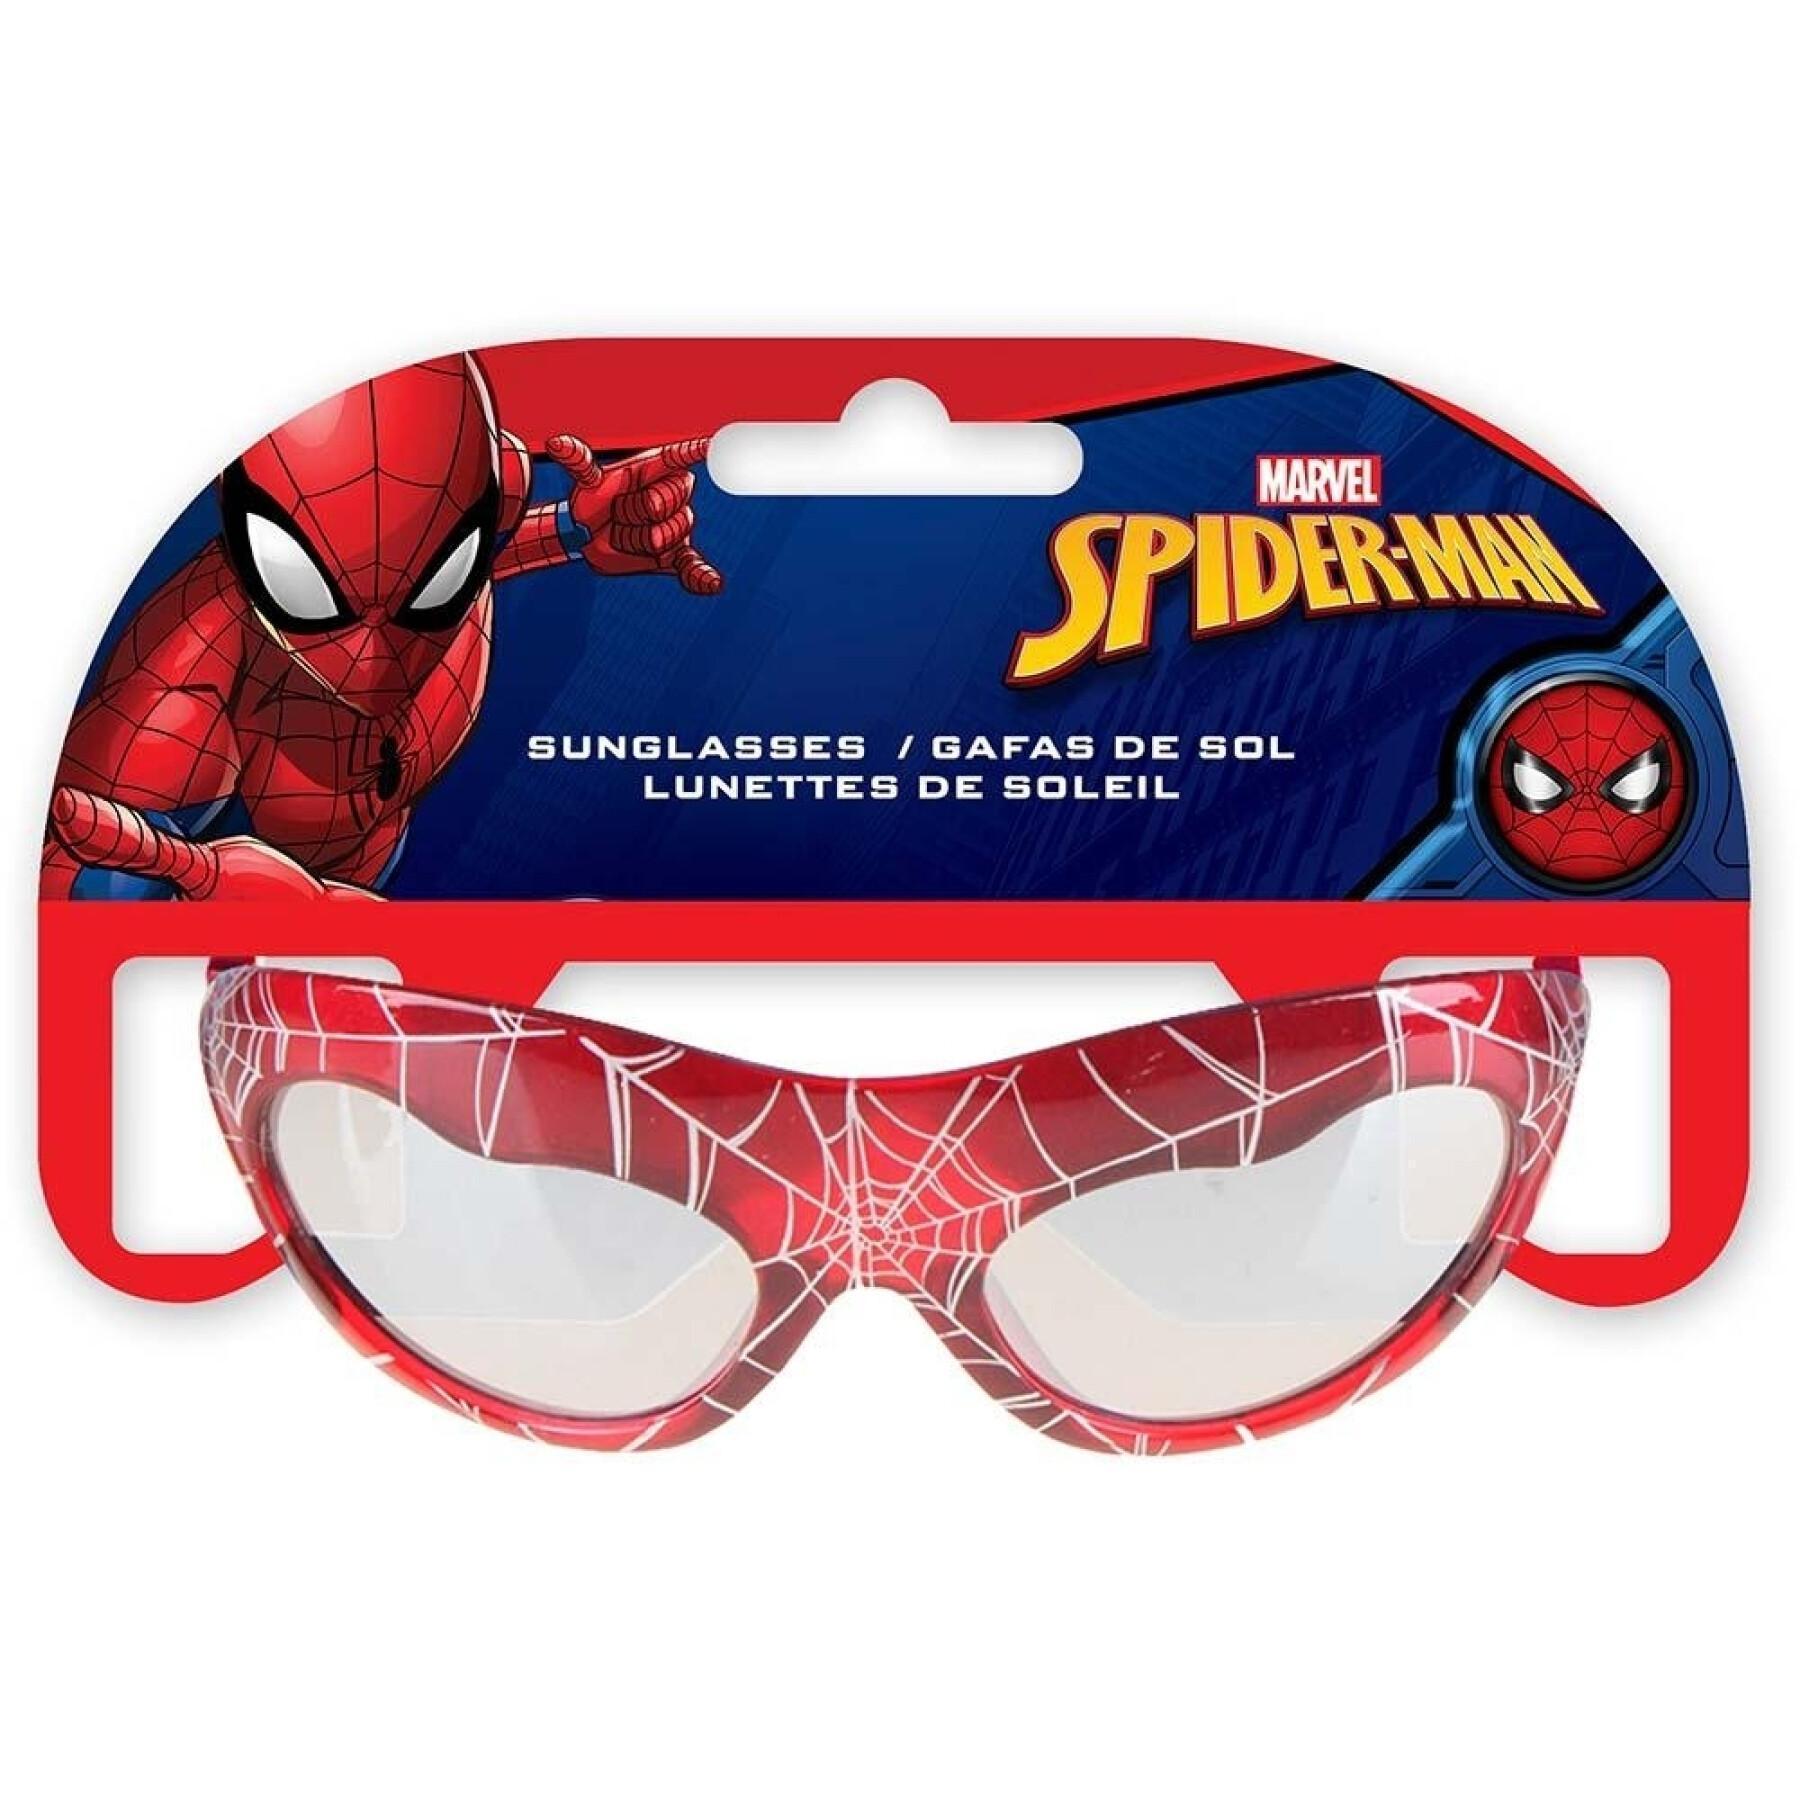 Geformte Sonnenbrille in Blisterverpackung Kind spiderman Marvel